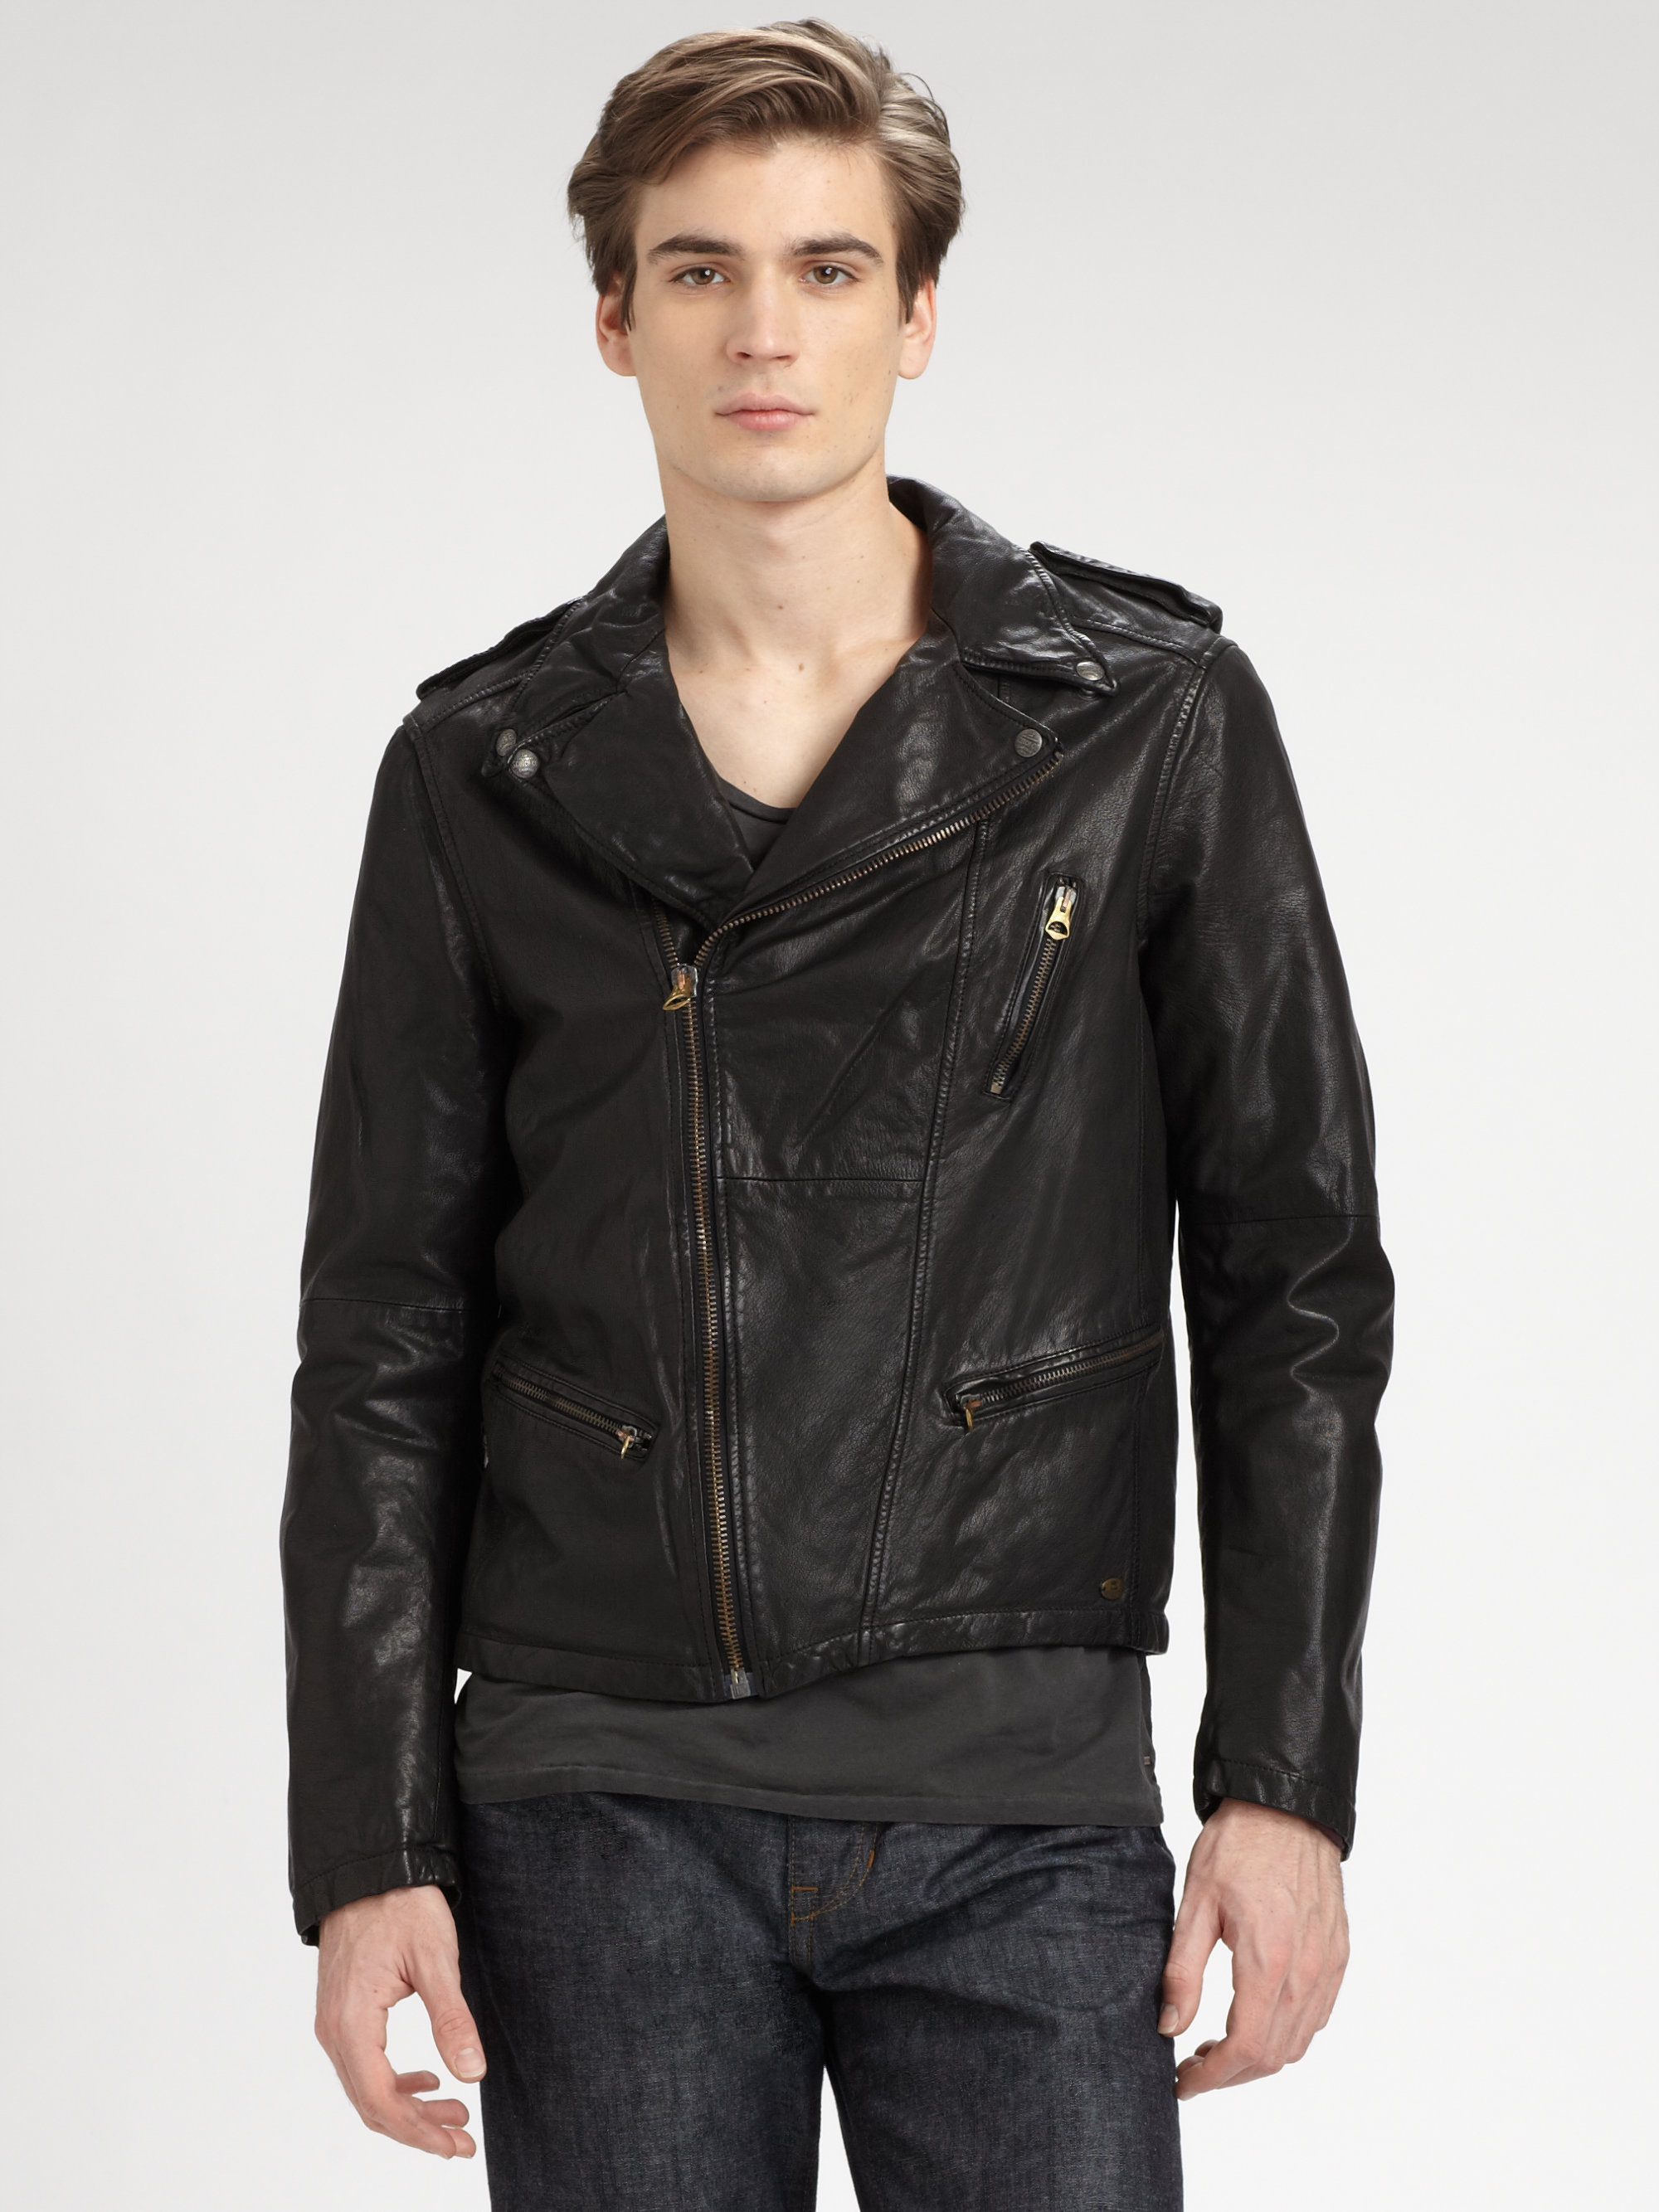 Scotch & soda Leather Rocker Jacket in Black for Men | Lyst